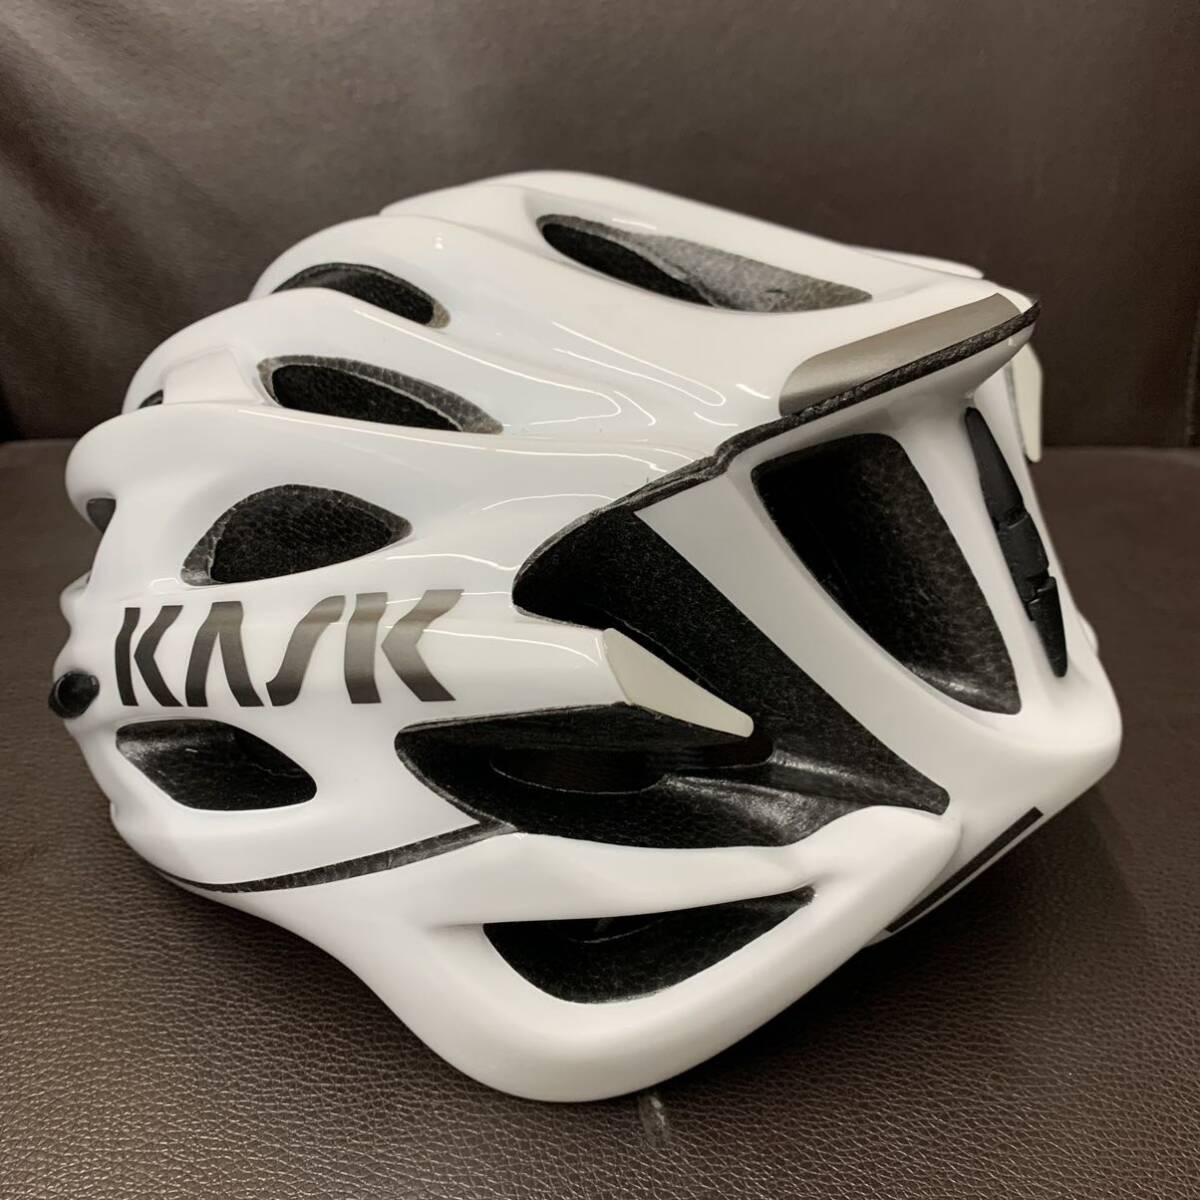 ① KASK MOJITO X 52-58cm Mサイズ サイクルヘルメット 自転車用 ヘルメット